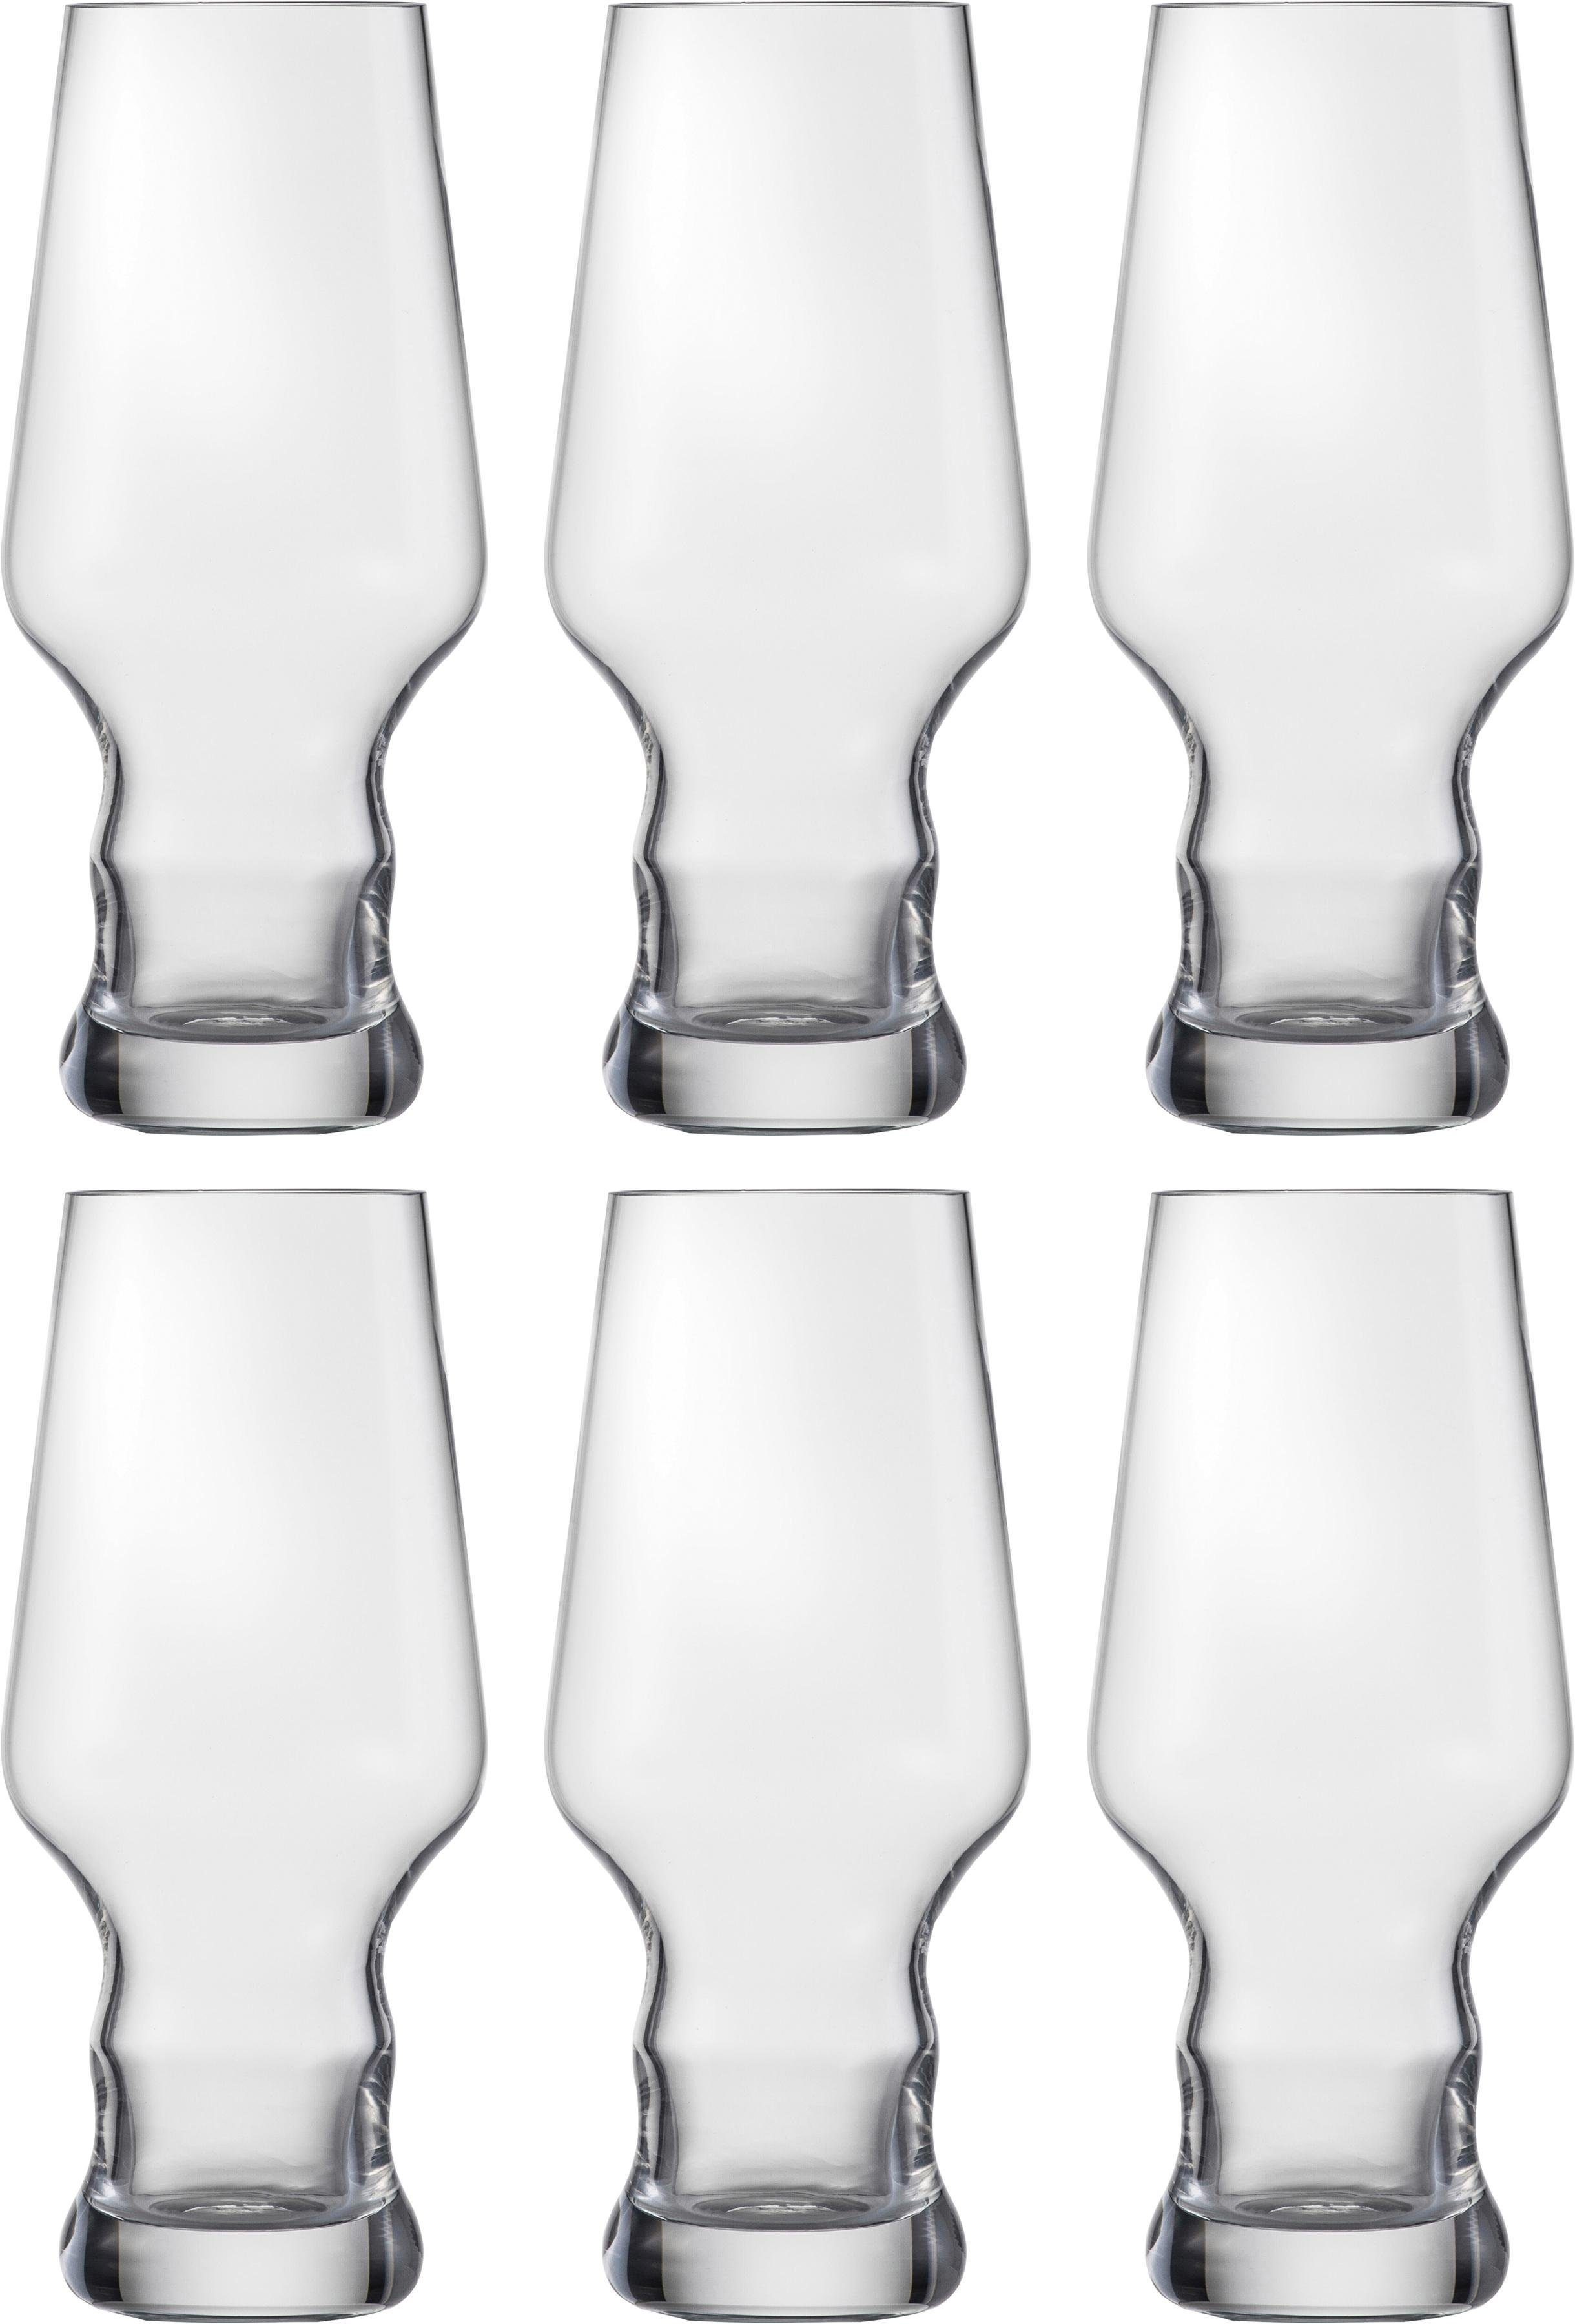 Eisch Bierglas Craft Beer Becher, Kristallglas, bleifrei, 450 ml, 6-teilig